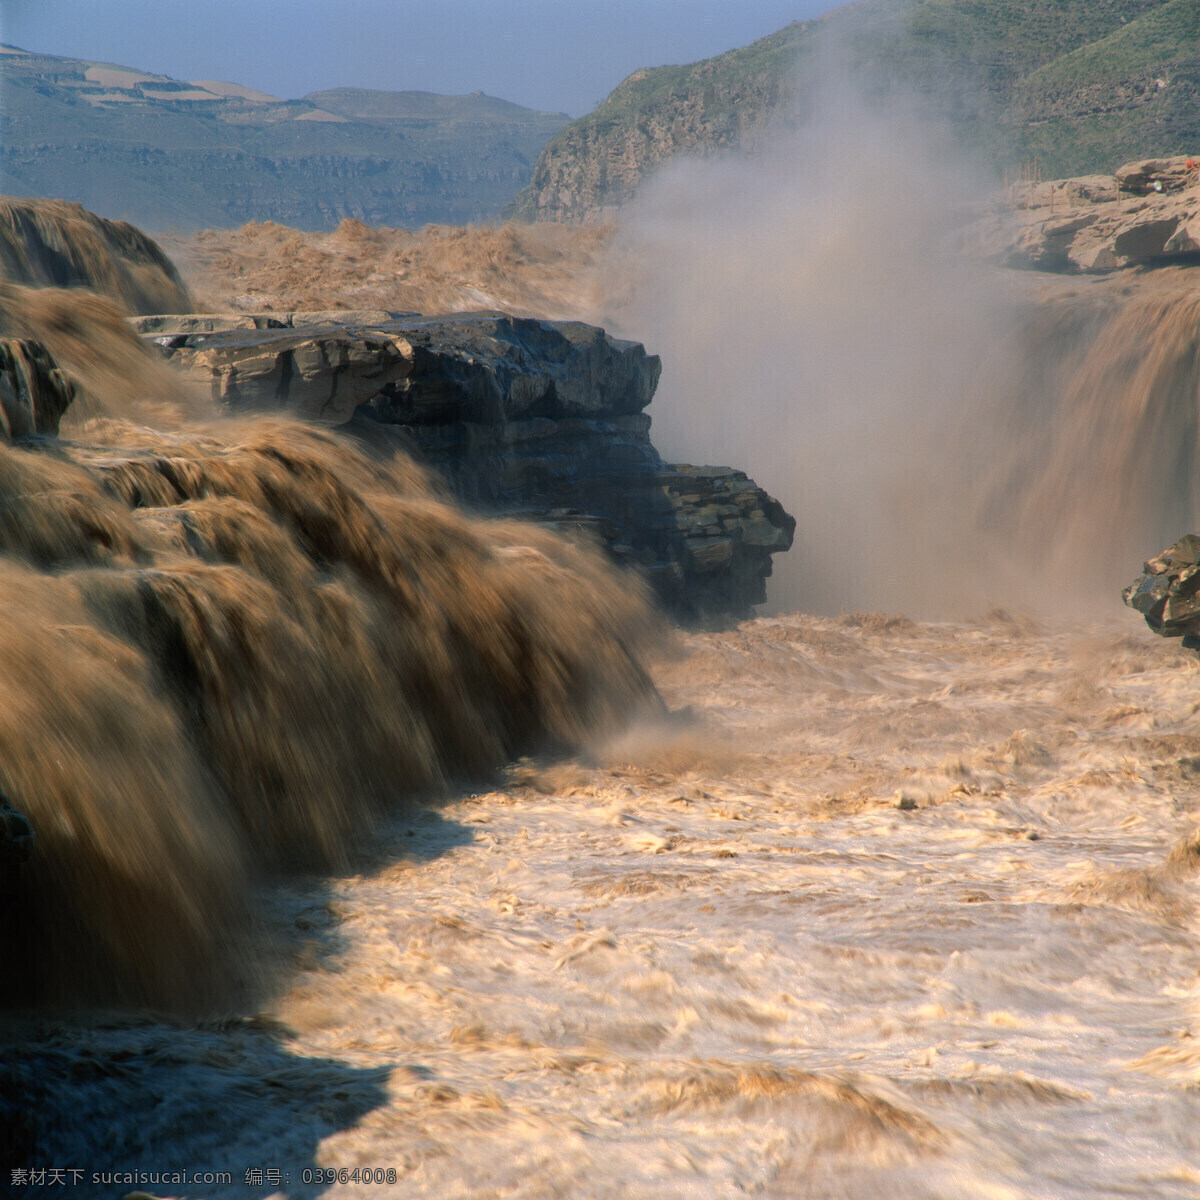 黄河 悬崖 天空 河流 山川 洪水 决口 自然景观 自然风景 摄影图库